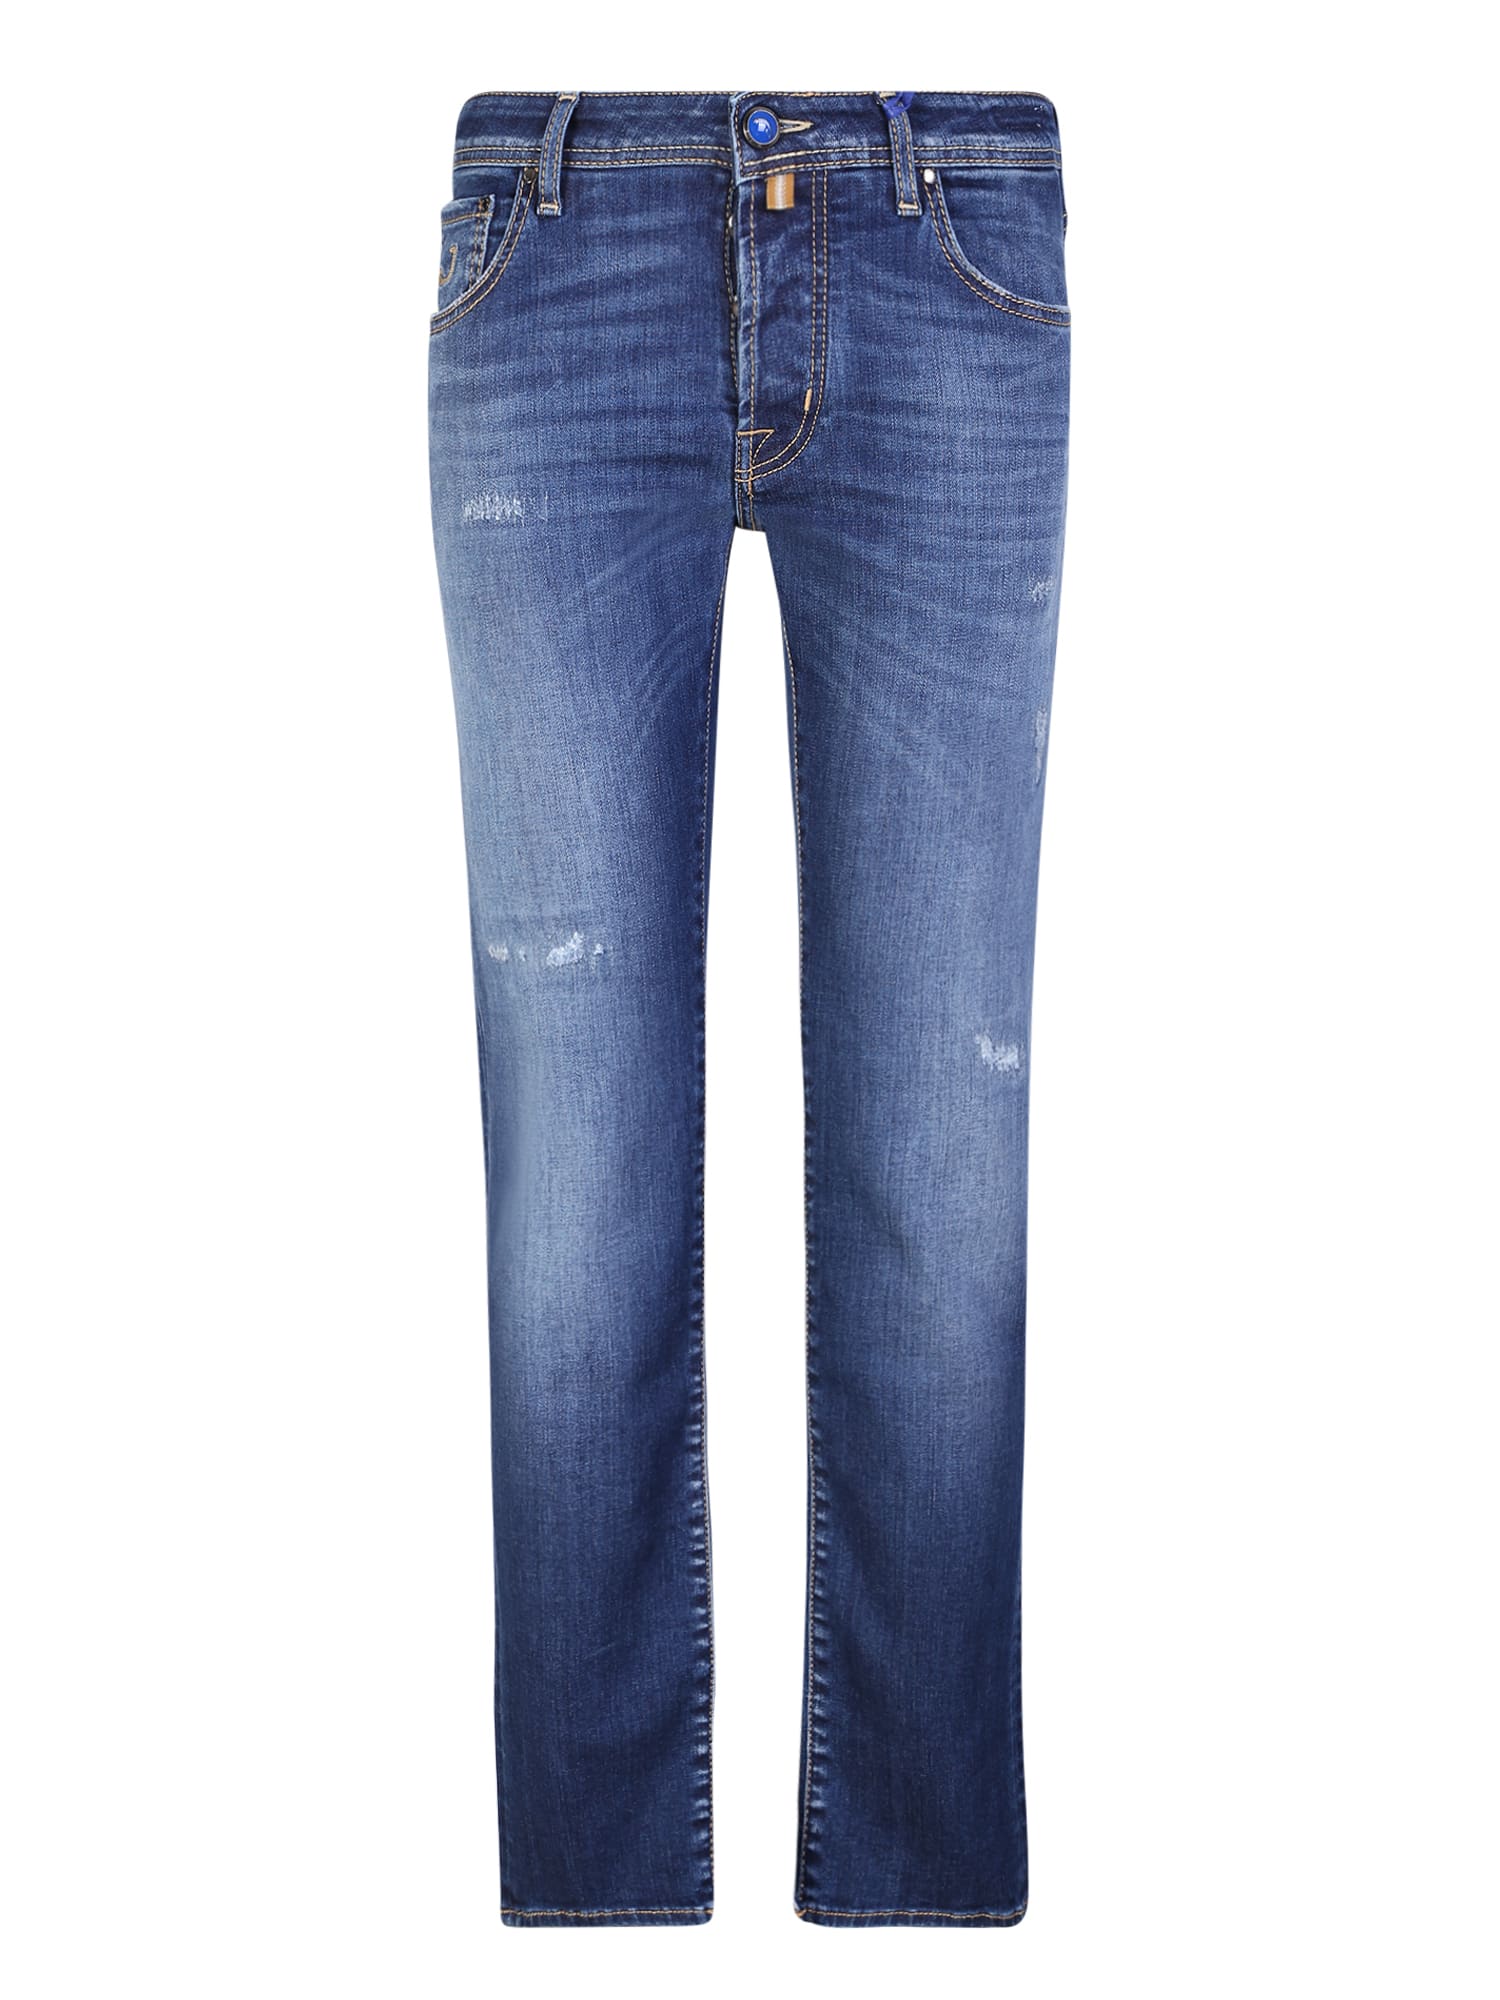 Shop Jacob Cohen Slim Cut Blue Jeans